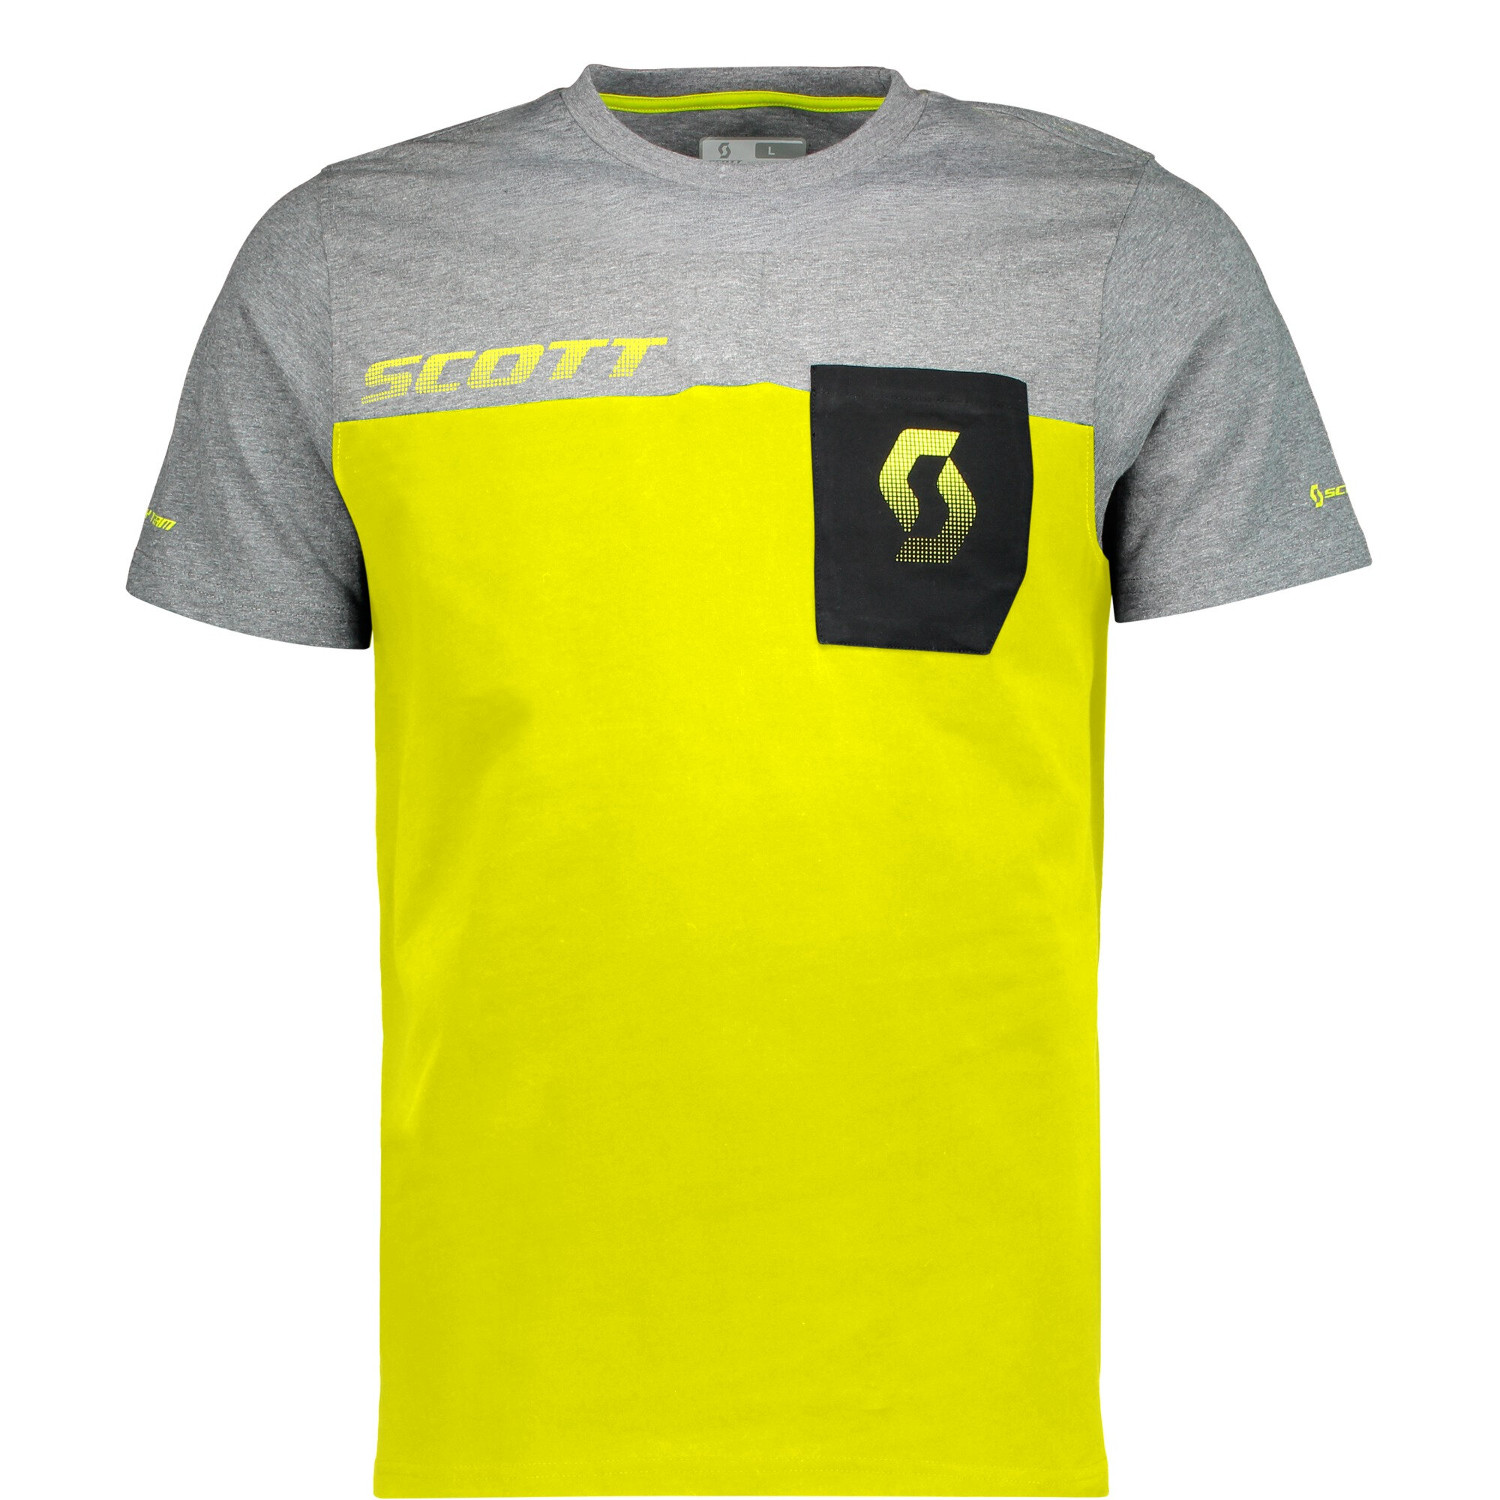 Scott T-Shirt Factory Team CO Sulphur Jaune/Gris foncé Melange